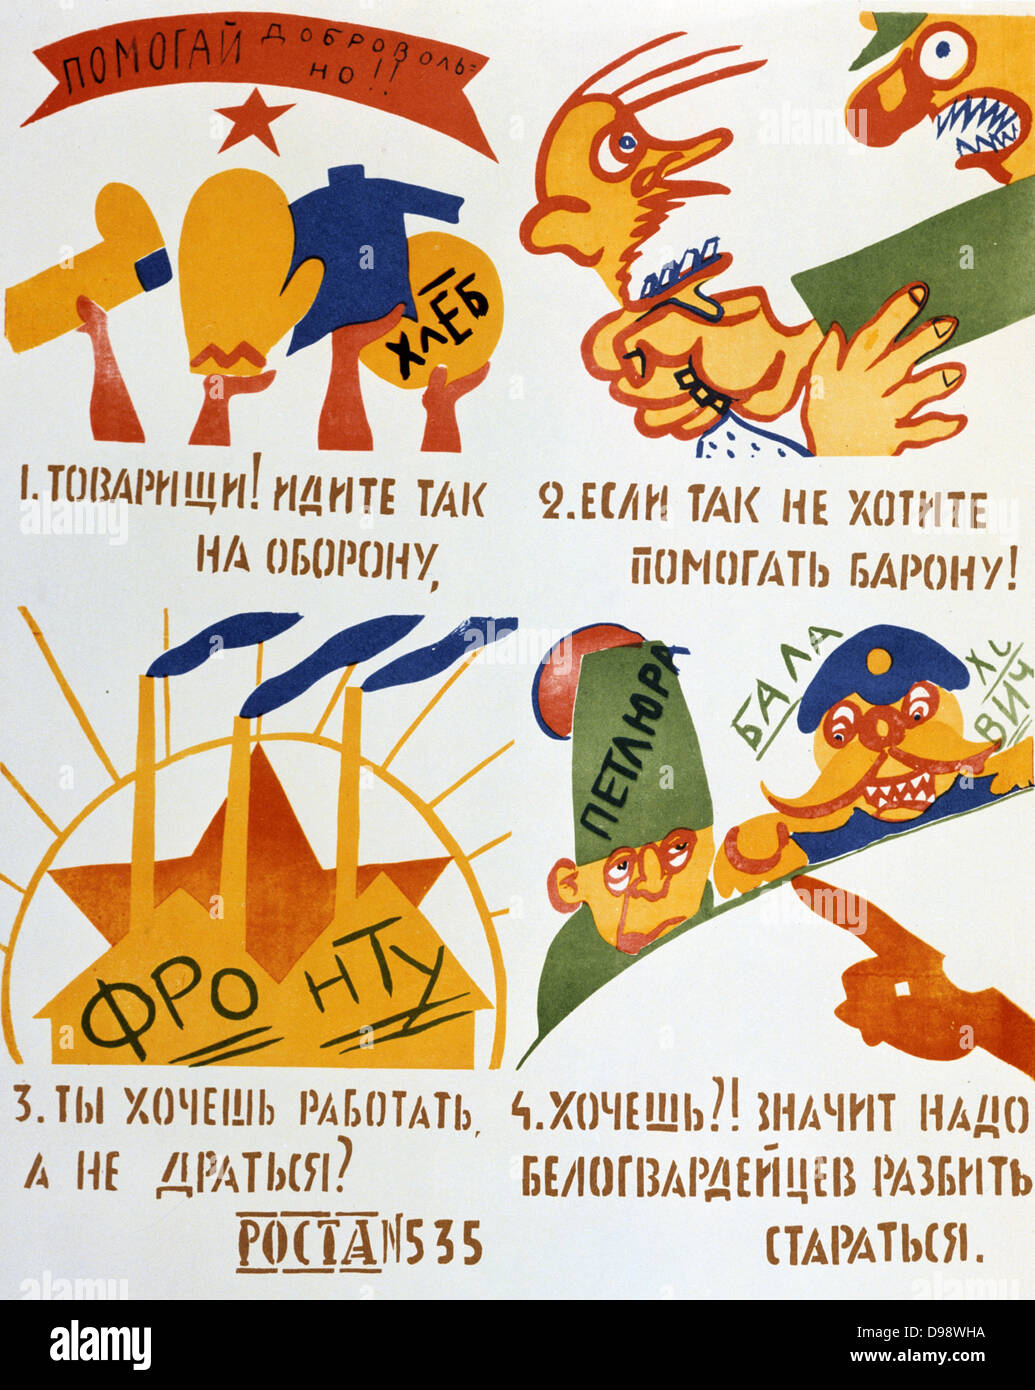 Volunteers', 1920. Soviet propaganda poster by Vladimir Maykovsky. Soviet Russia USSR Communism Communist Stock Photo